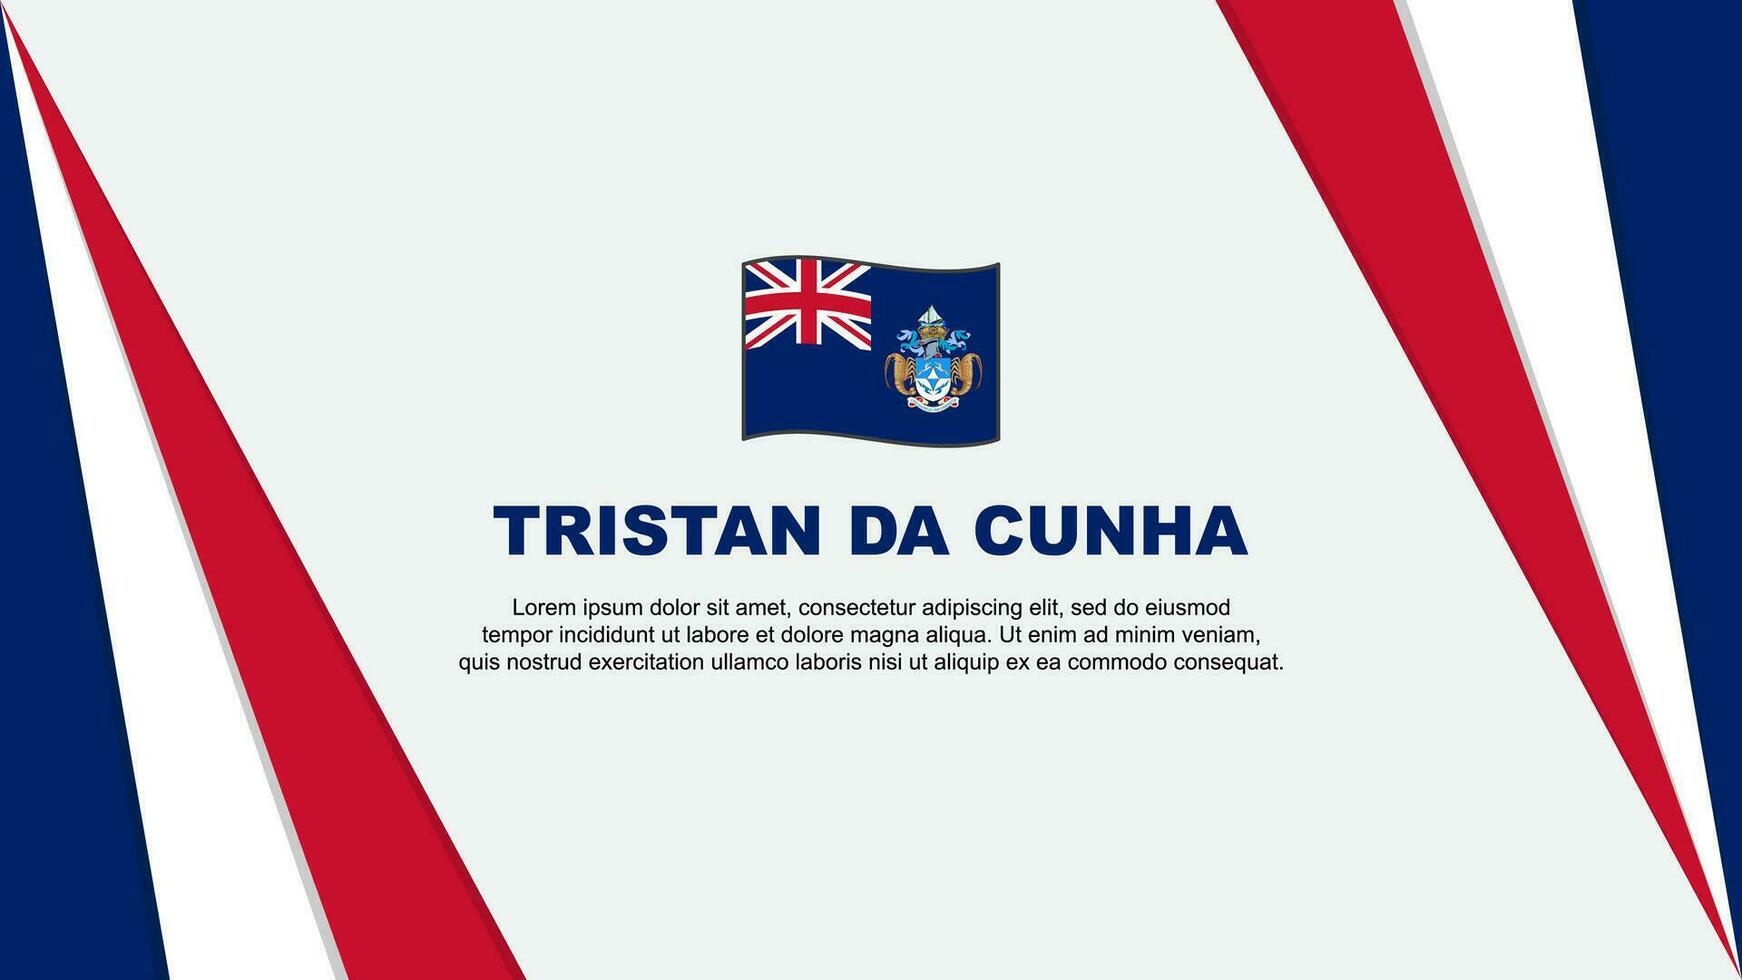 Tristan Da Cunha Flag Abstract Background Design Template. Tristan Da Cunha Independence Day Banner Cartoon Vector Illustration. Tristan Da Cunha Flag